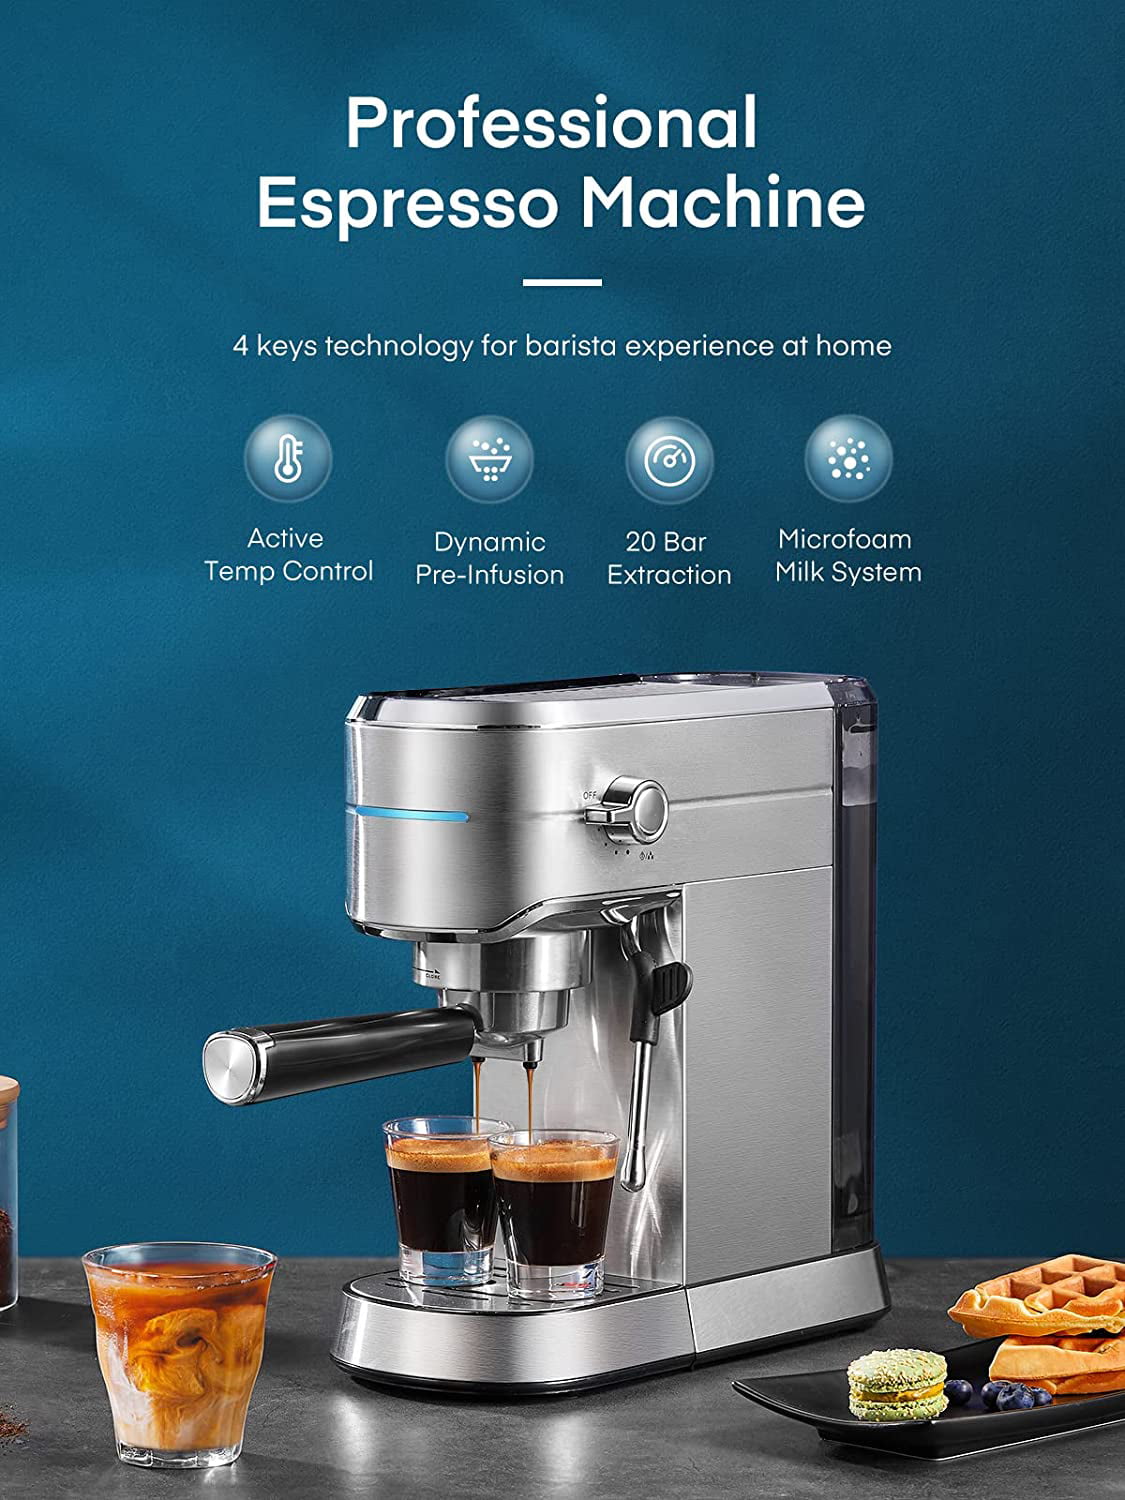 AMZCHEF Espresso Machine 20 Bar with Milk Frother/Steam Wand